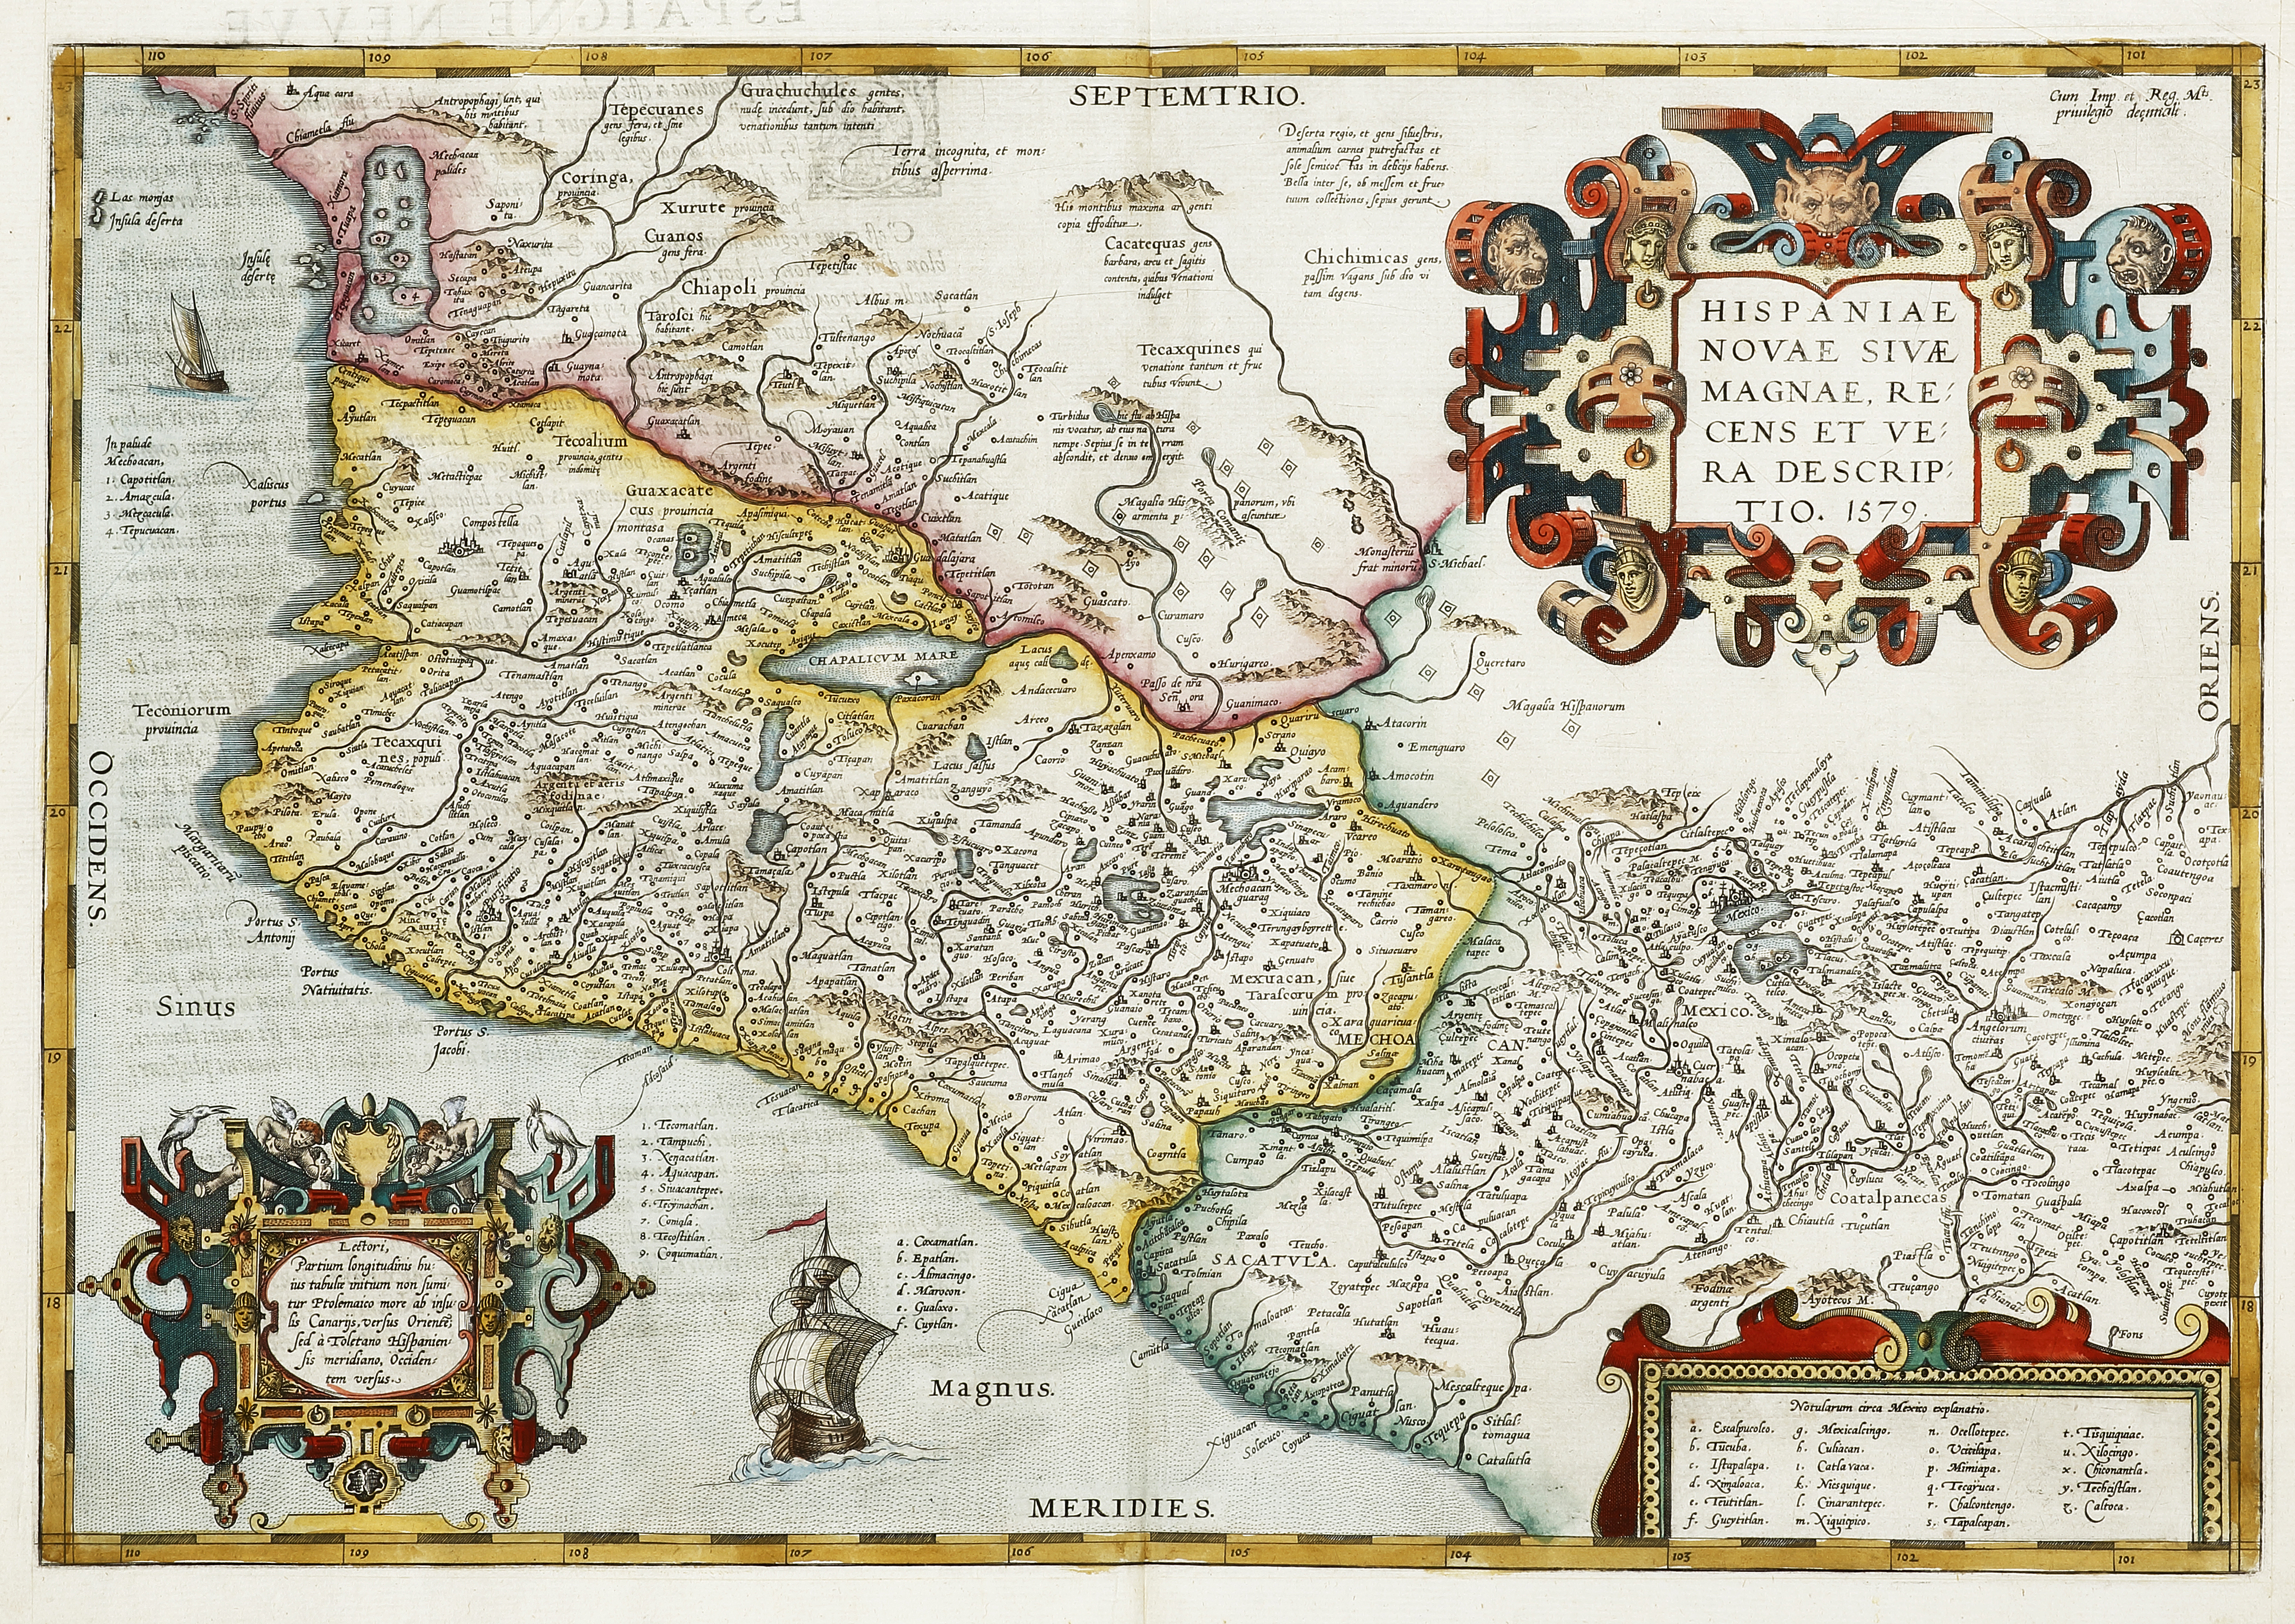 Hispaniae Novae Sivae Magnae Recens Et Vera Descriptio 1579. - Antique Map from 1581